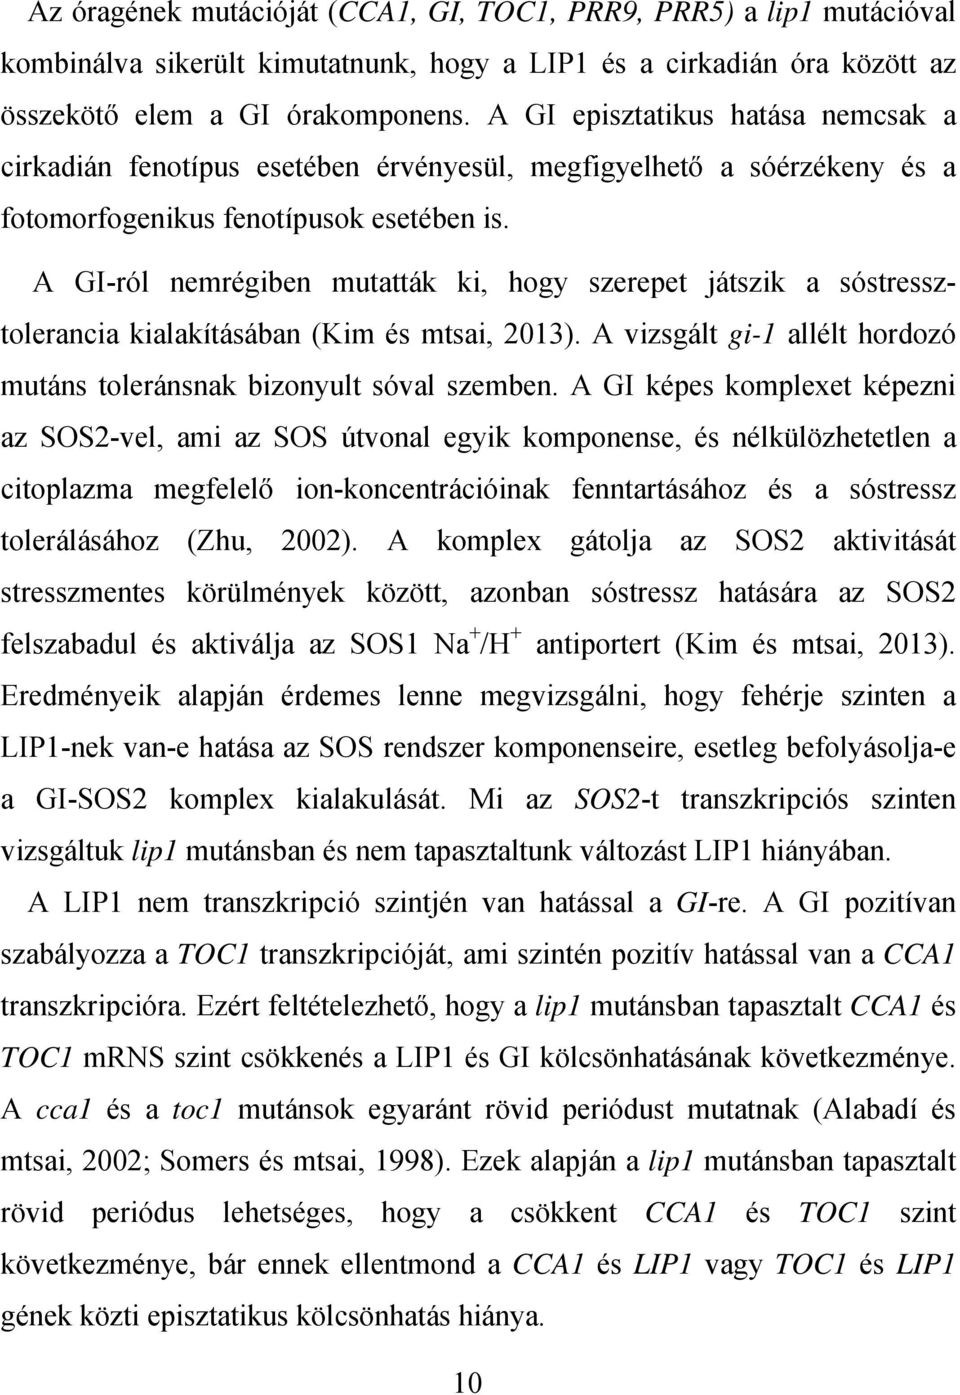 A GI-ról nemrégiben mutatták ki, hogy szerepet játszik a sóstressztolerancia kialakításában (Kim és mtsai, 2013). A vizsgált gi-1 allélt hordozó mutáns toleránsnak bizonyult sóval szemben.